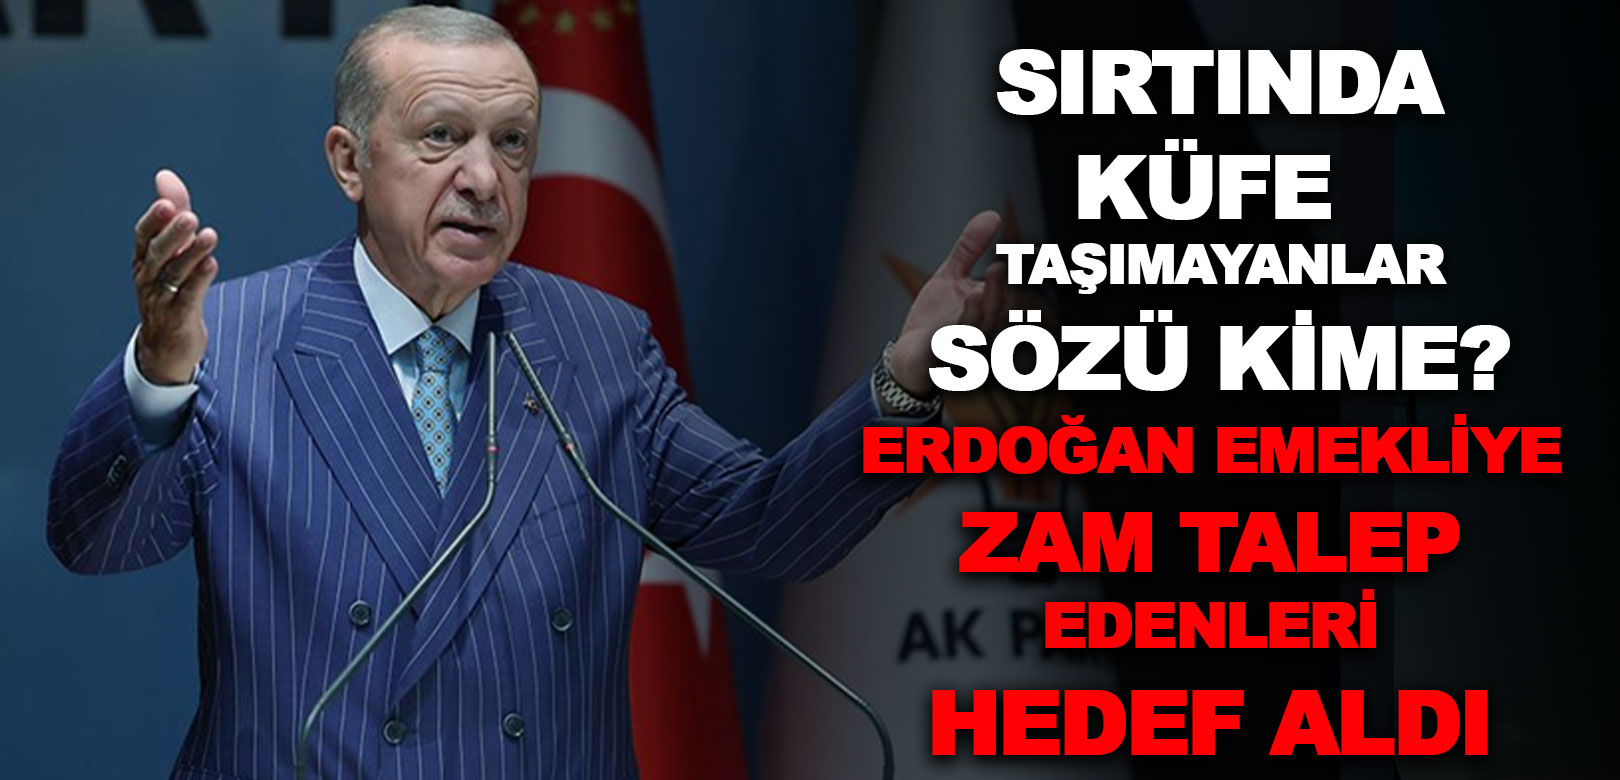 Erdoğan emekliye zam isteyenlere sert çıkıştı: Peki bu sözler kime? Bahçeli ne demişti?